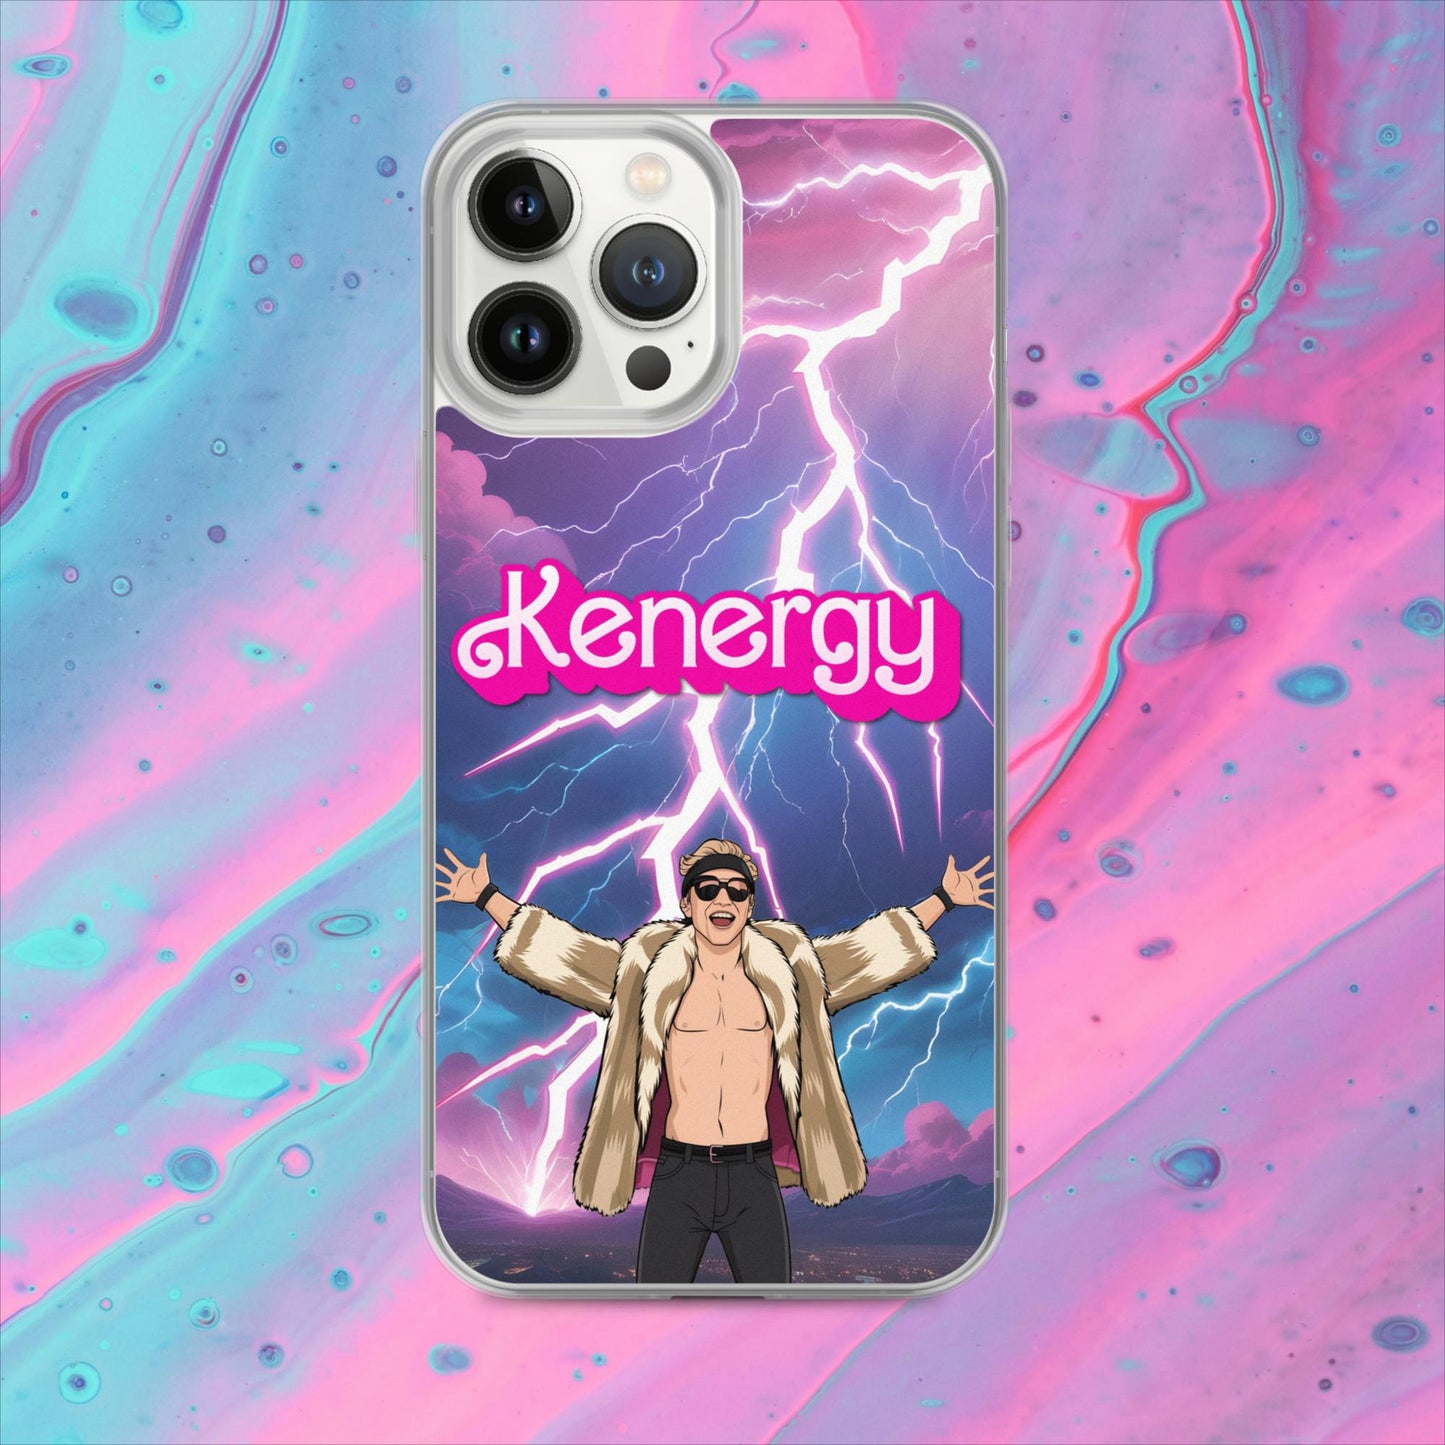 Kenergy Barbie Ryan Gosling Ken Clear Case for iPhone Next Cult Brand Barbie, Ken, Kenergy, Movies, Ryan Gosling